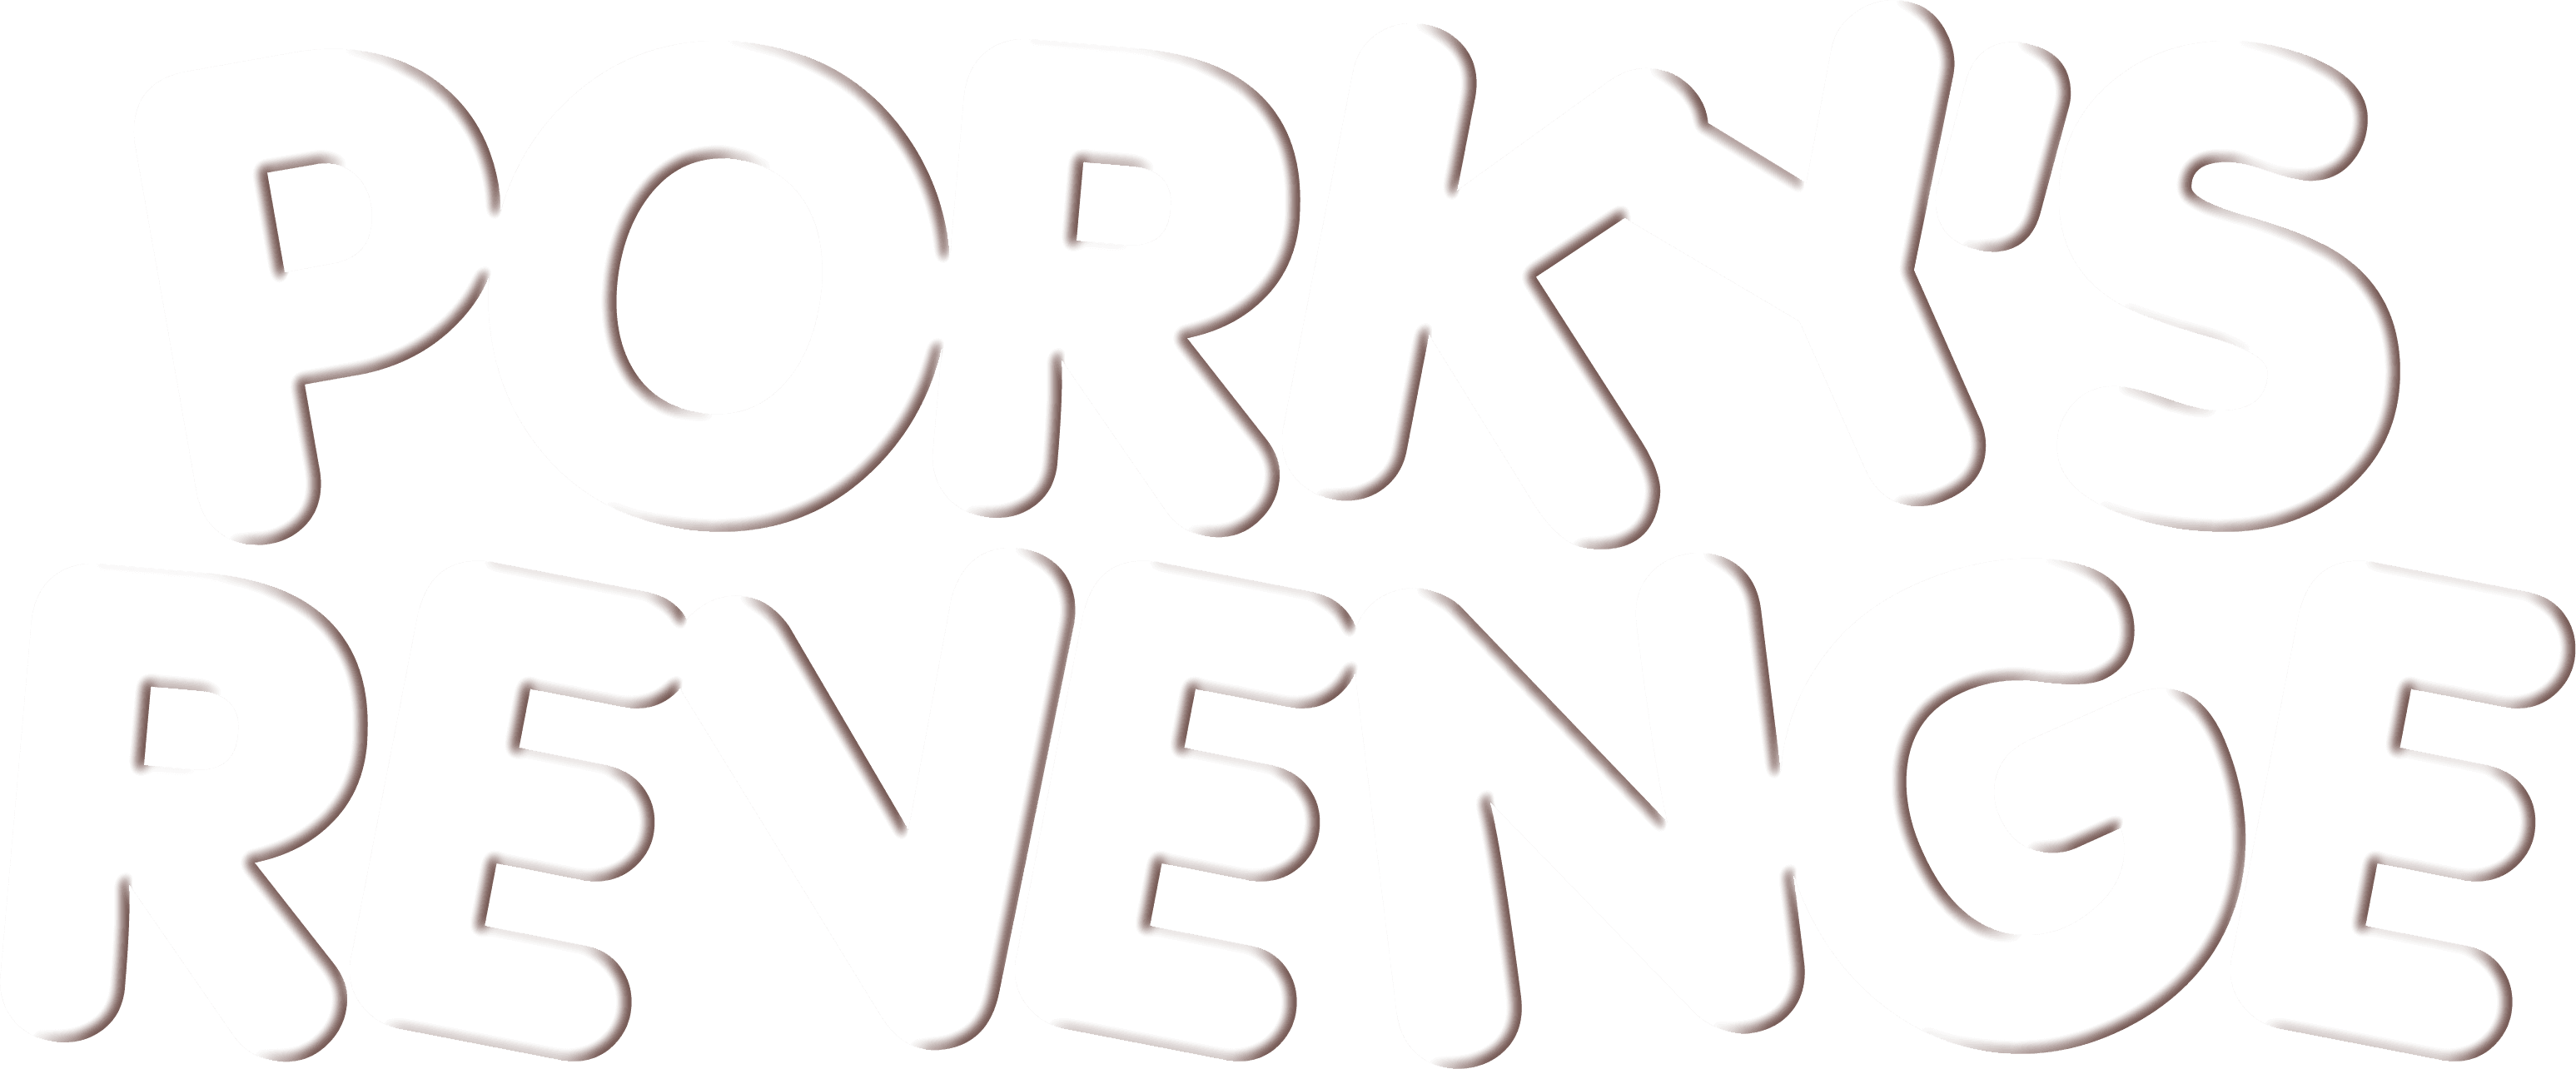 Porky's Revenge logo